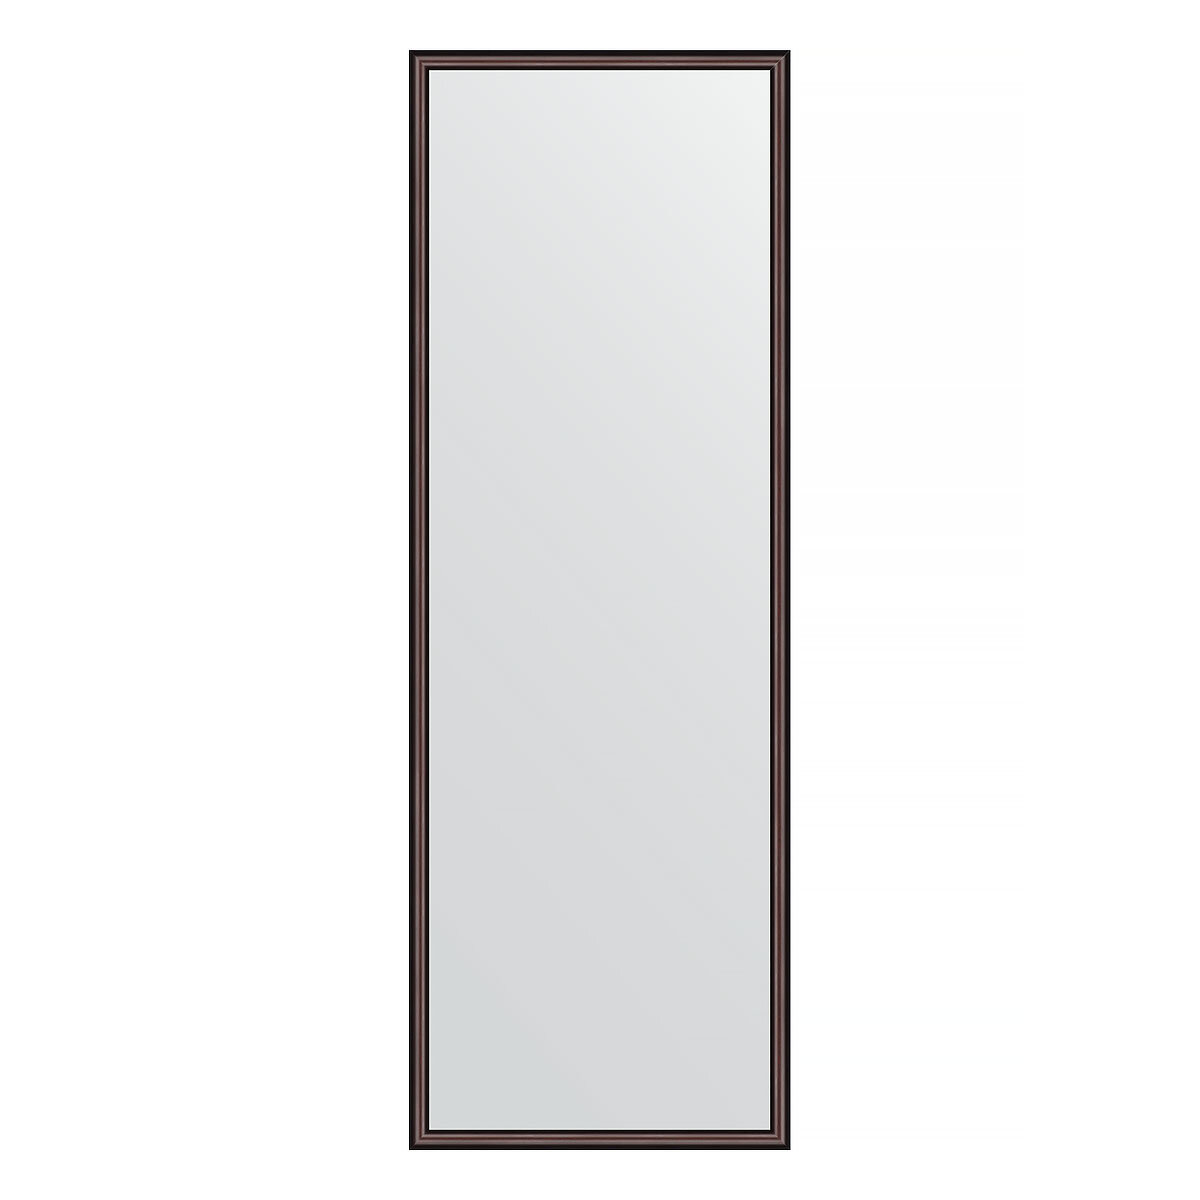 Зеркало настенное EVOFORM в багетной раме махагон, 48х138 см, для гостиной, прихожей, кабинета, спальни и ванной комнаты, BY 0707